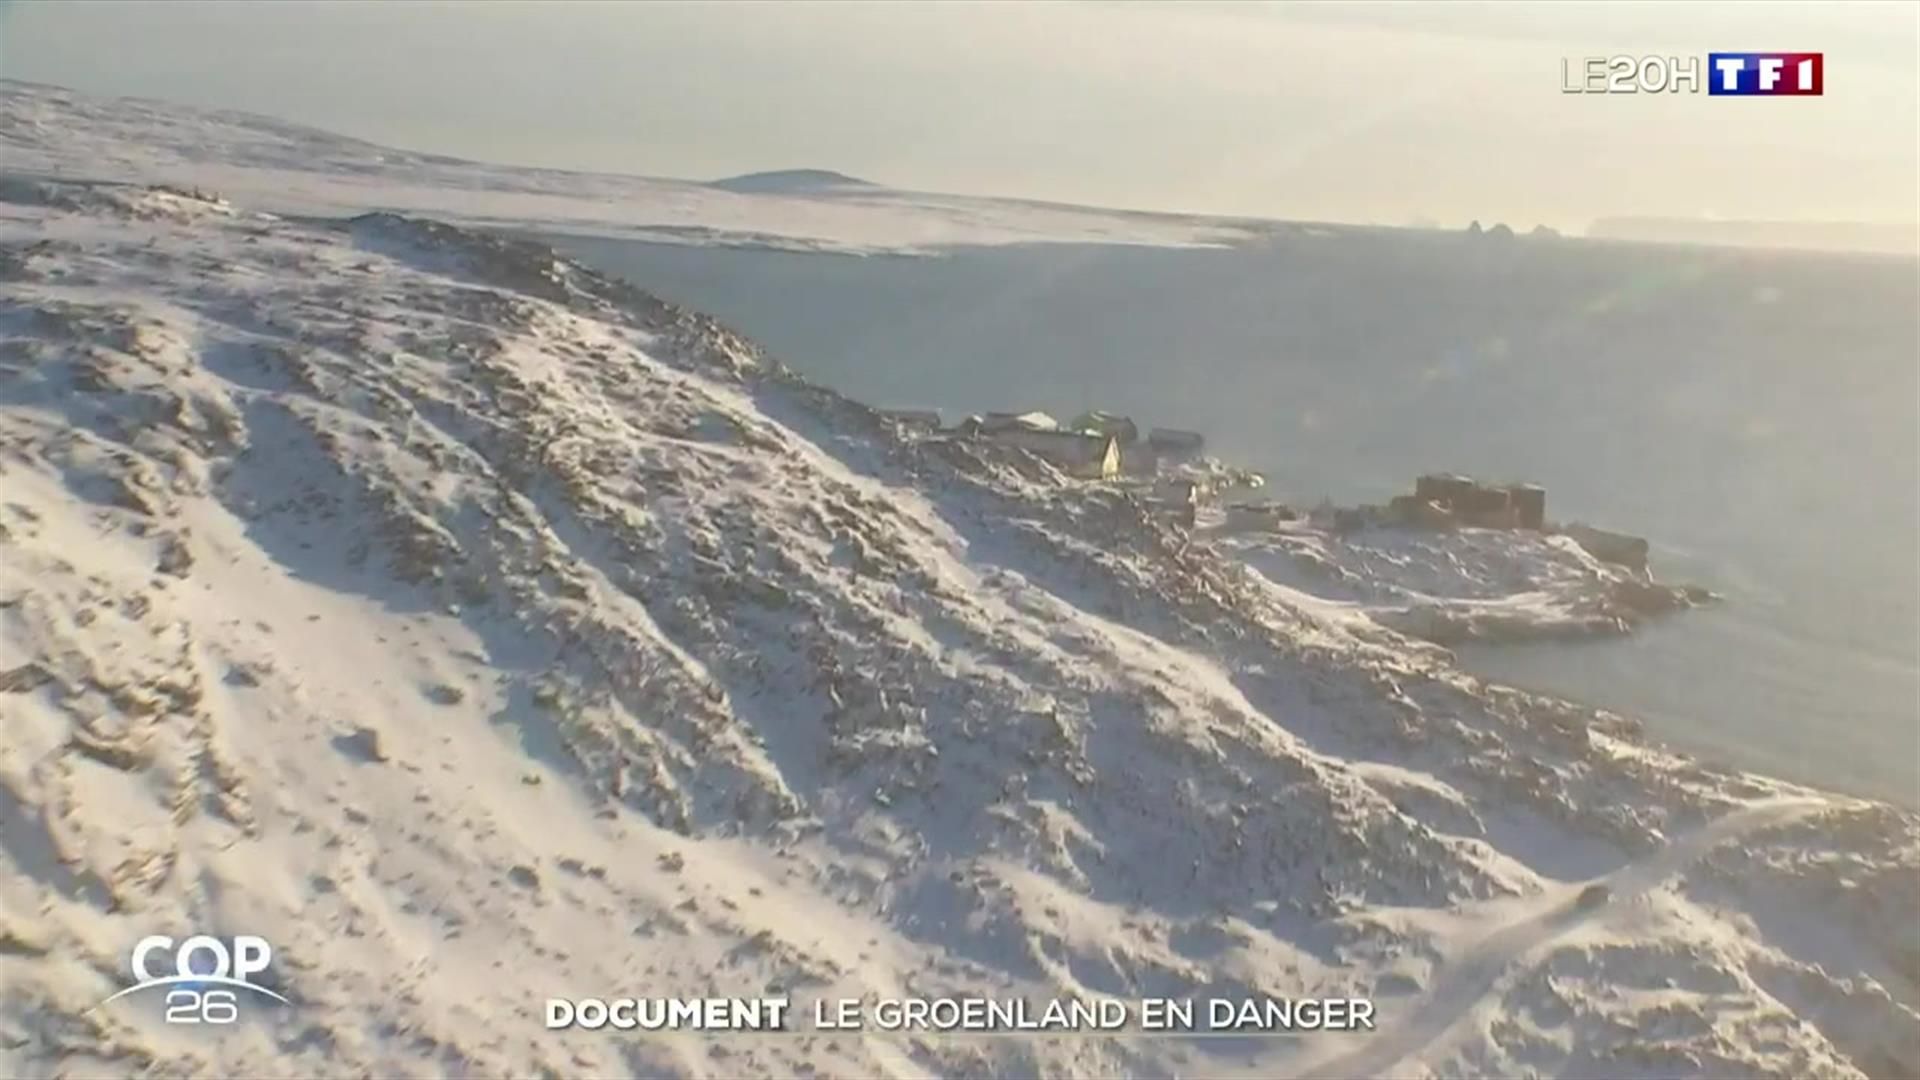 REPORTAGE - L'inquiétude des habitants du Groenland face au réchauffement climatique